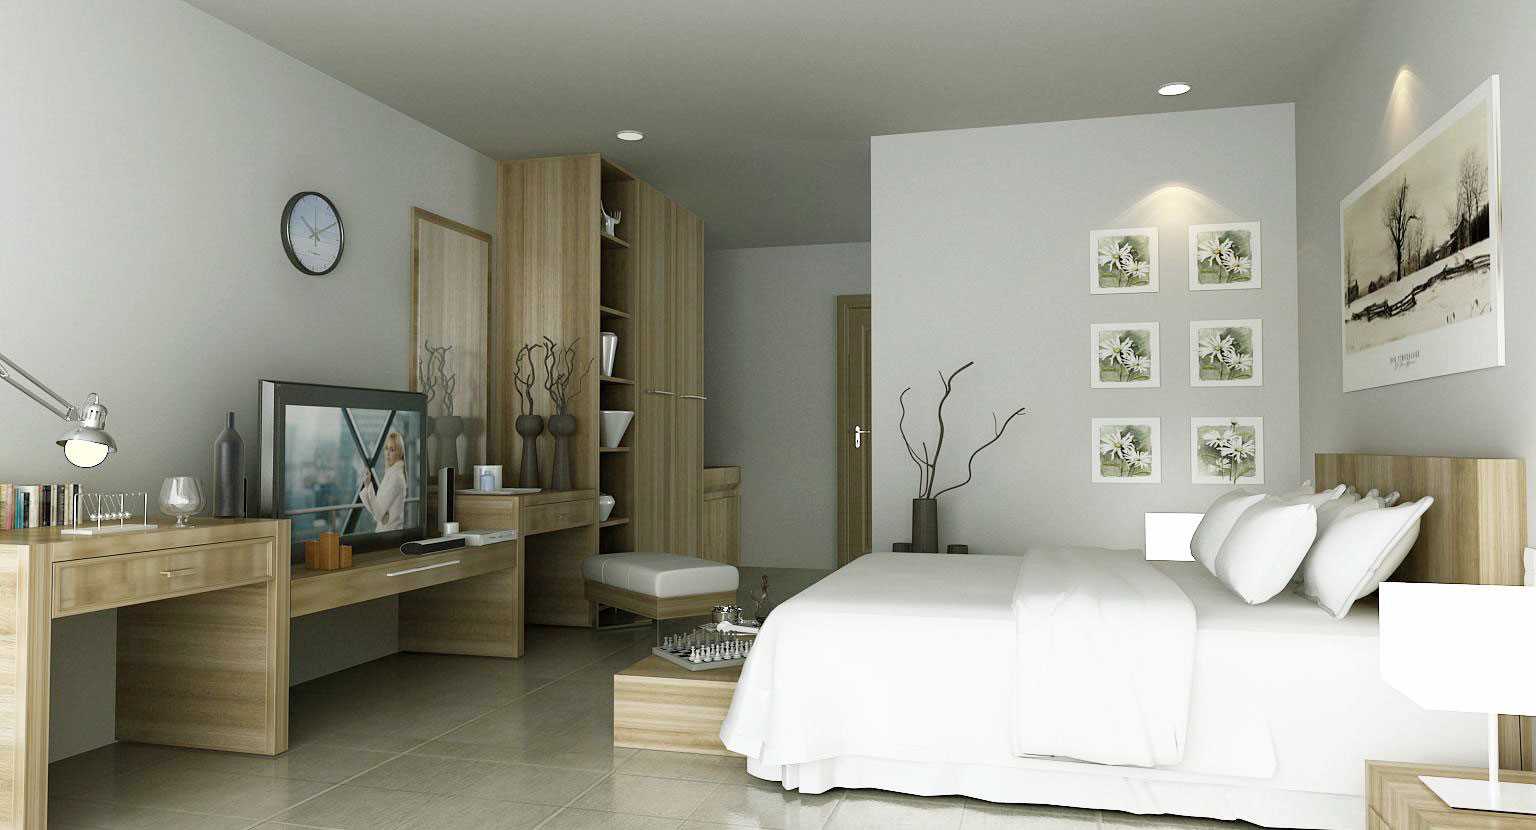 l'idea di un bellissimo interno camera da letto per una ragazza in stile moderno